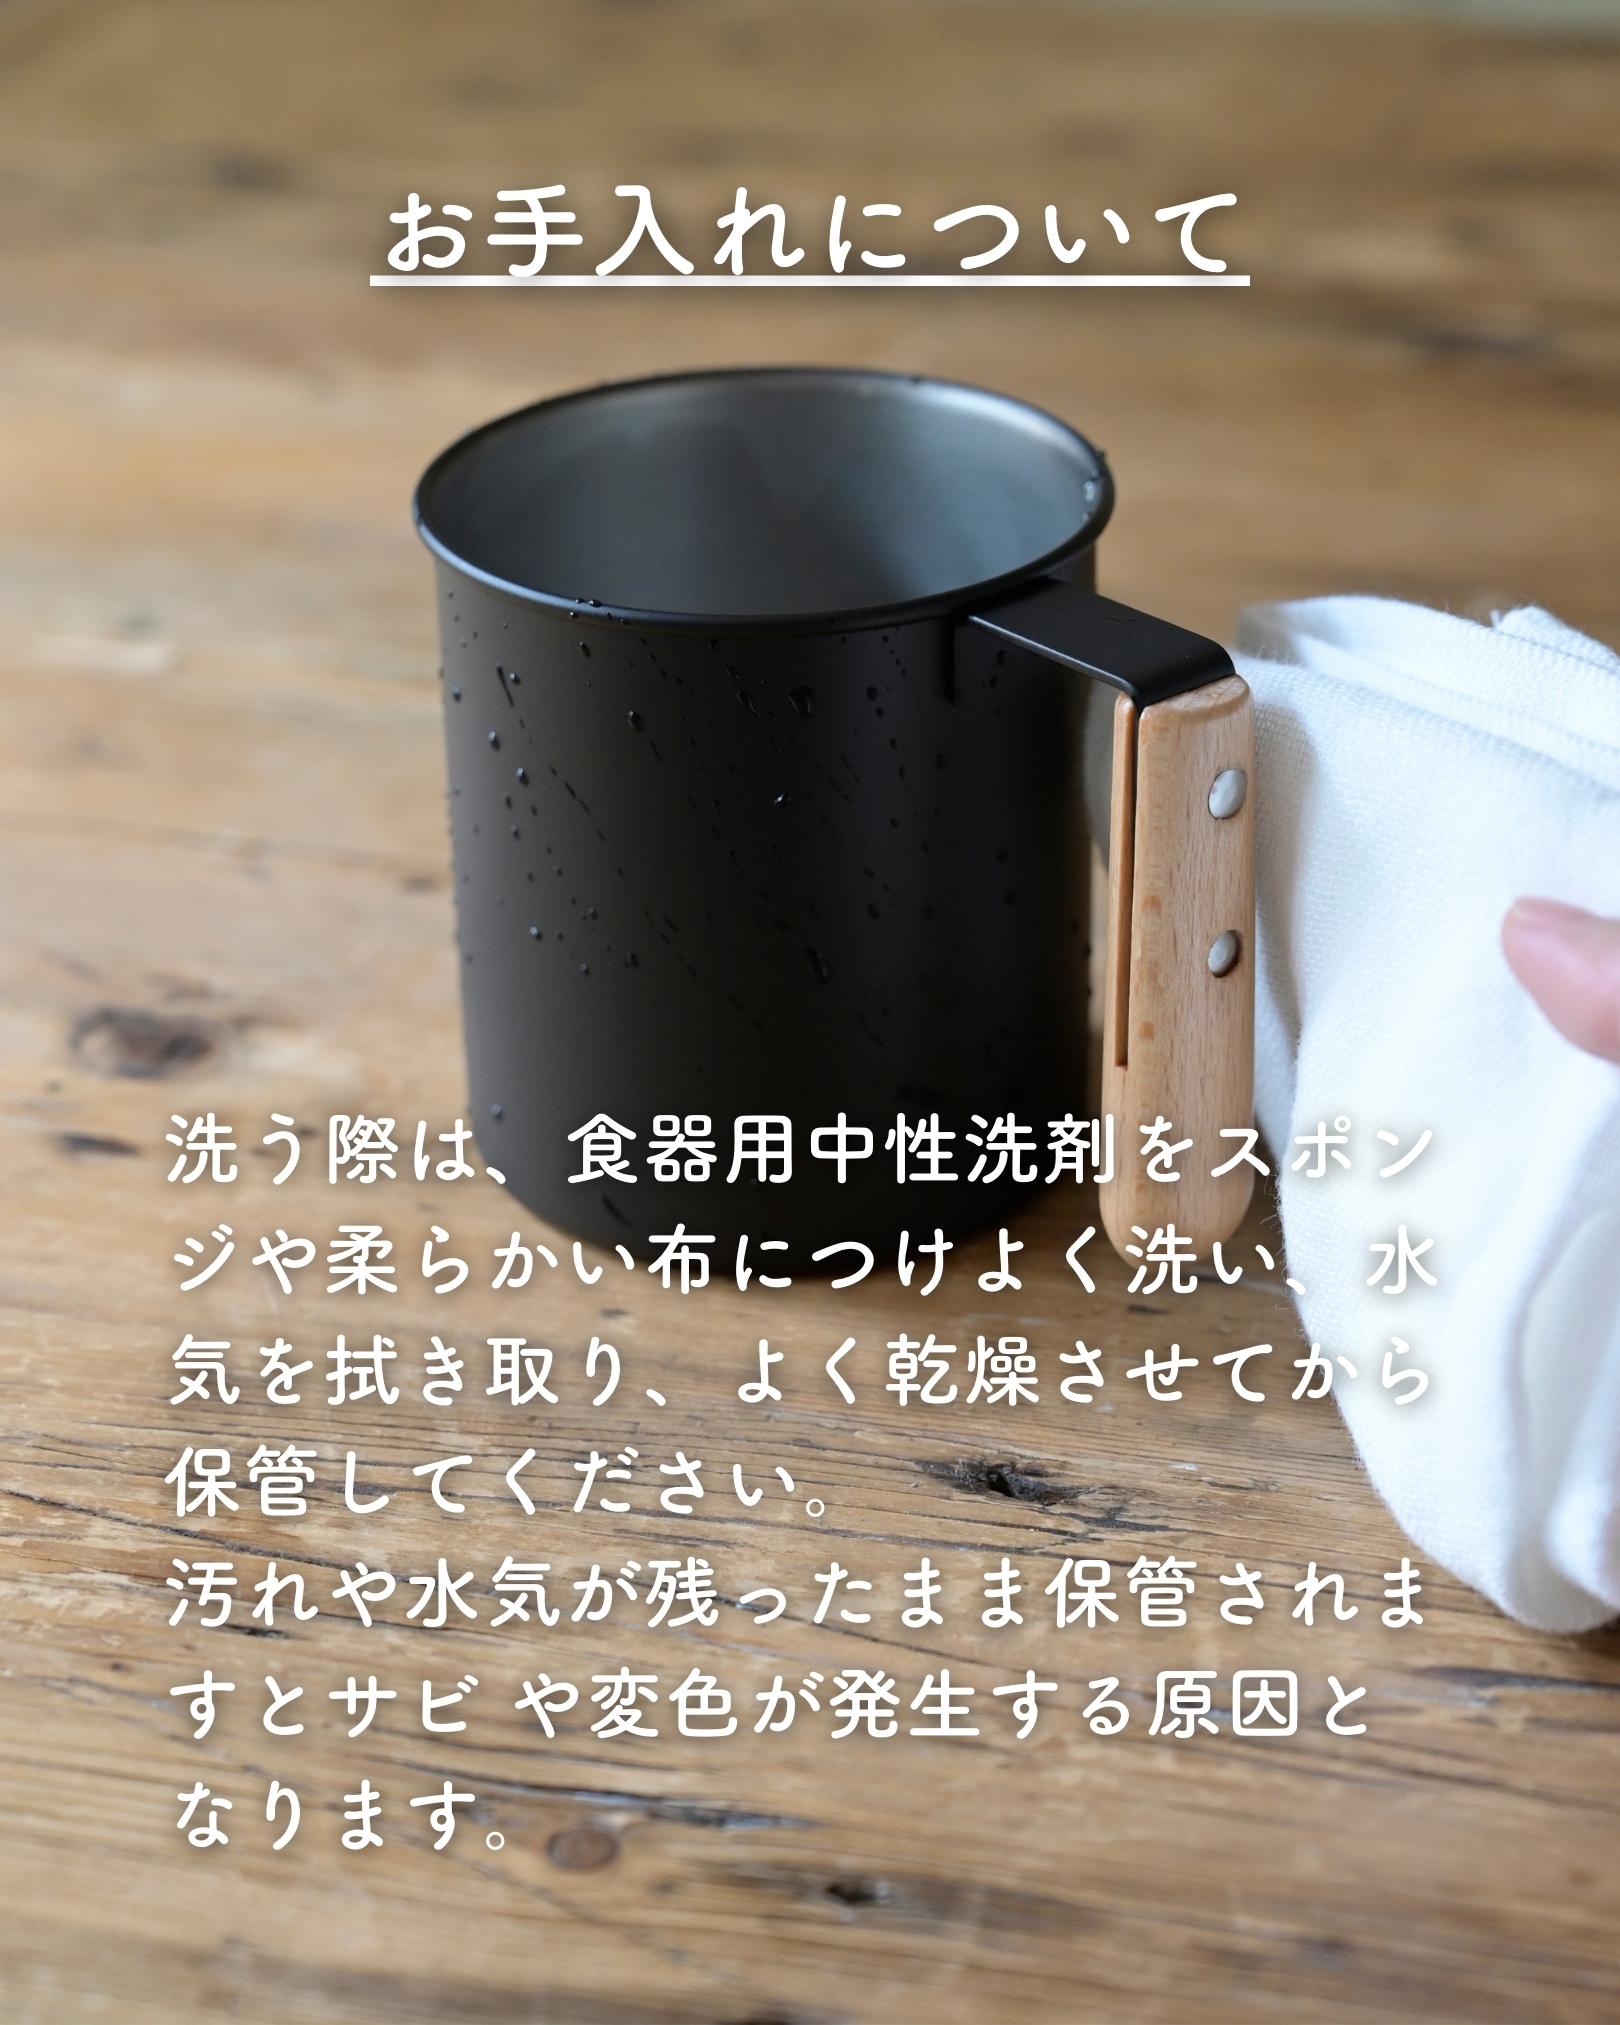 マグ マグカップ L 300ml ステンレス 日本製 ビーワーススタイル